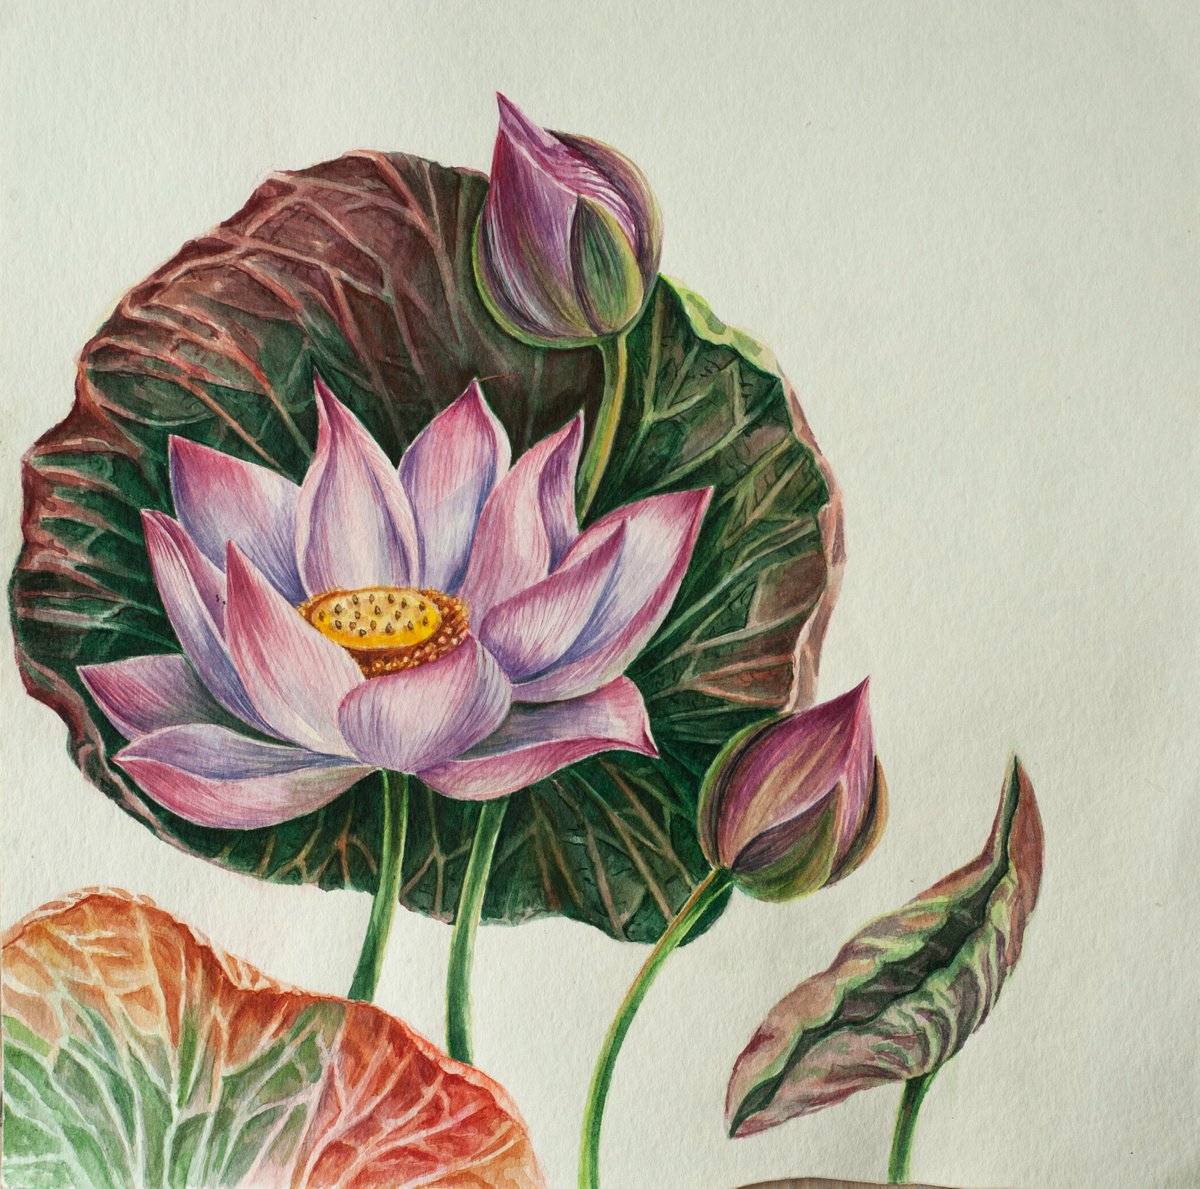 Watercolor Lotus by Maria Chernobrovkina